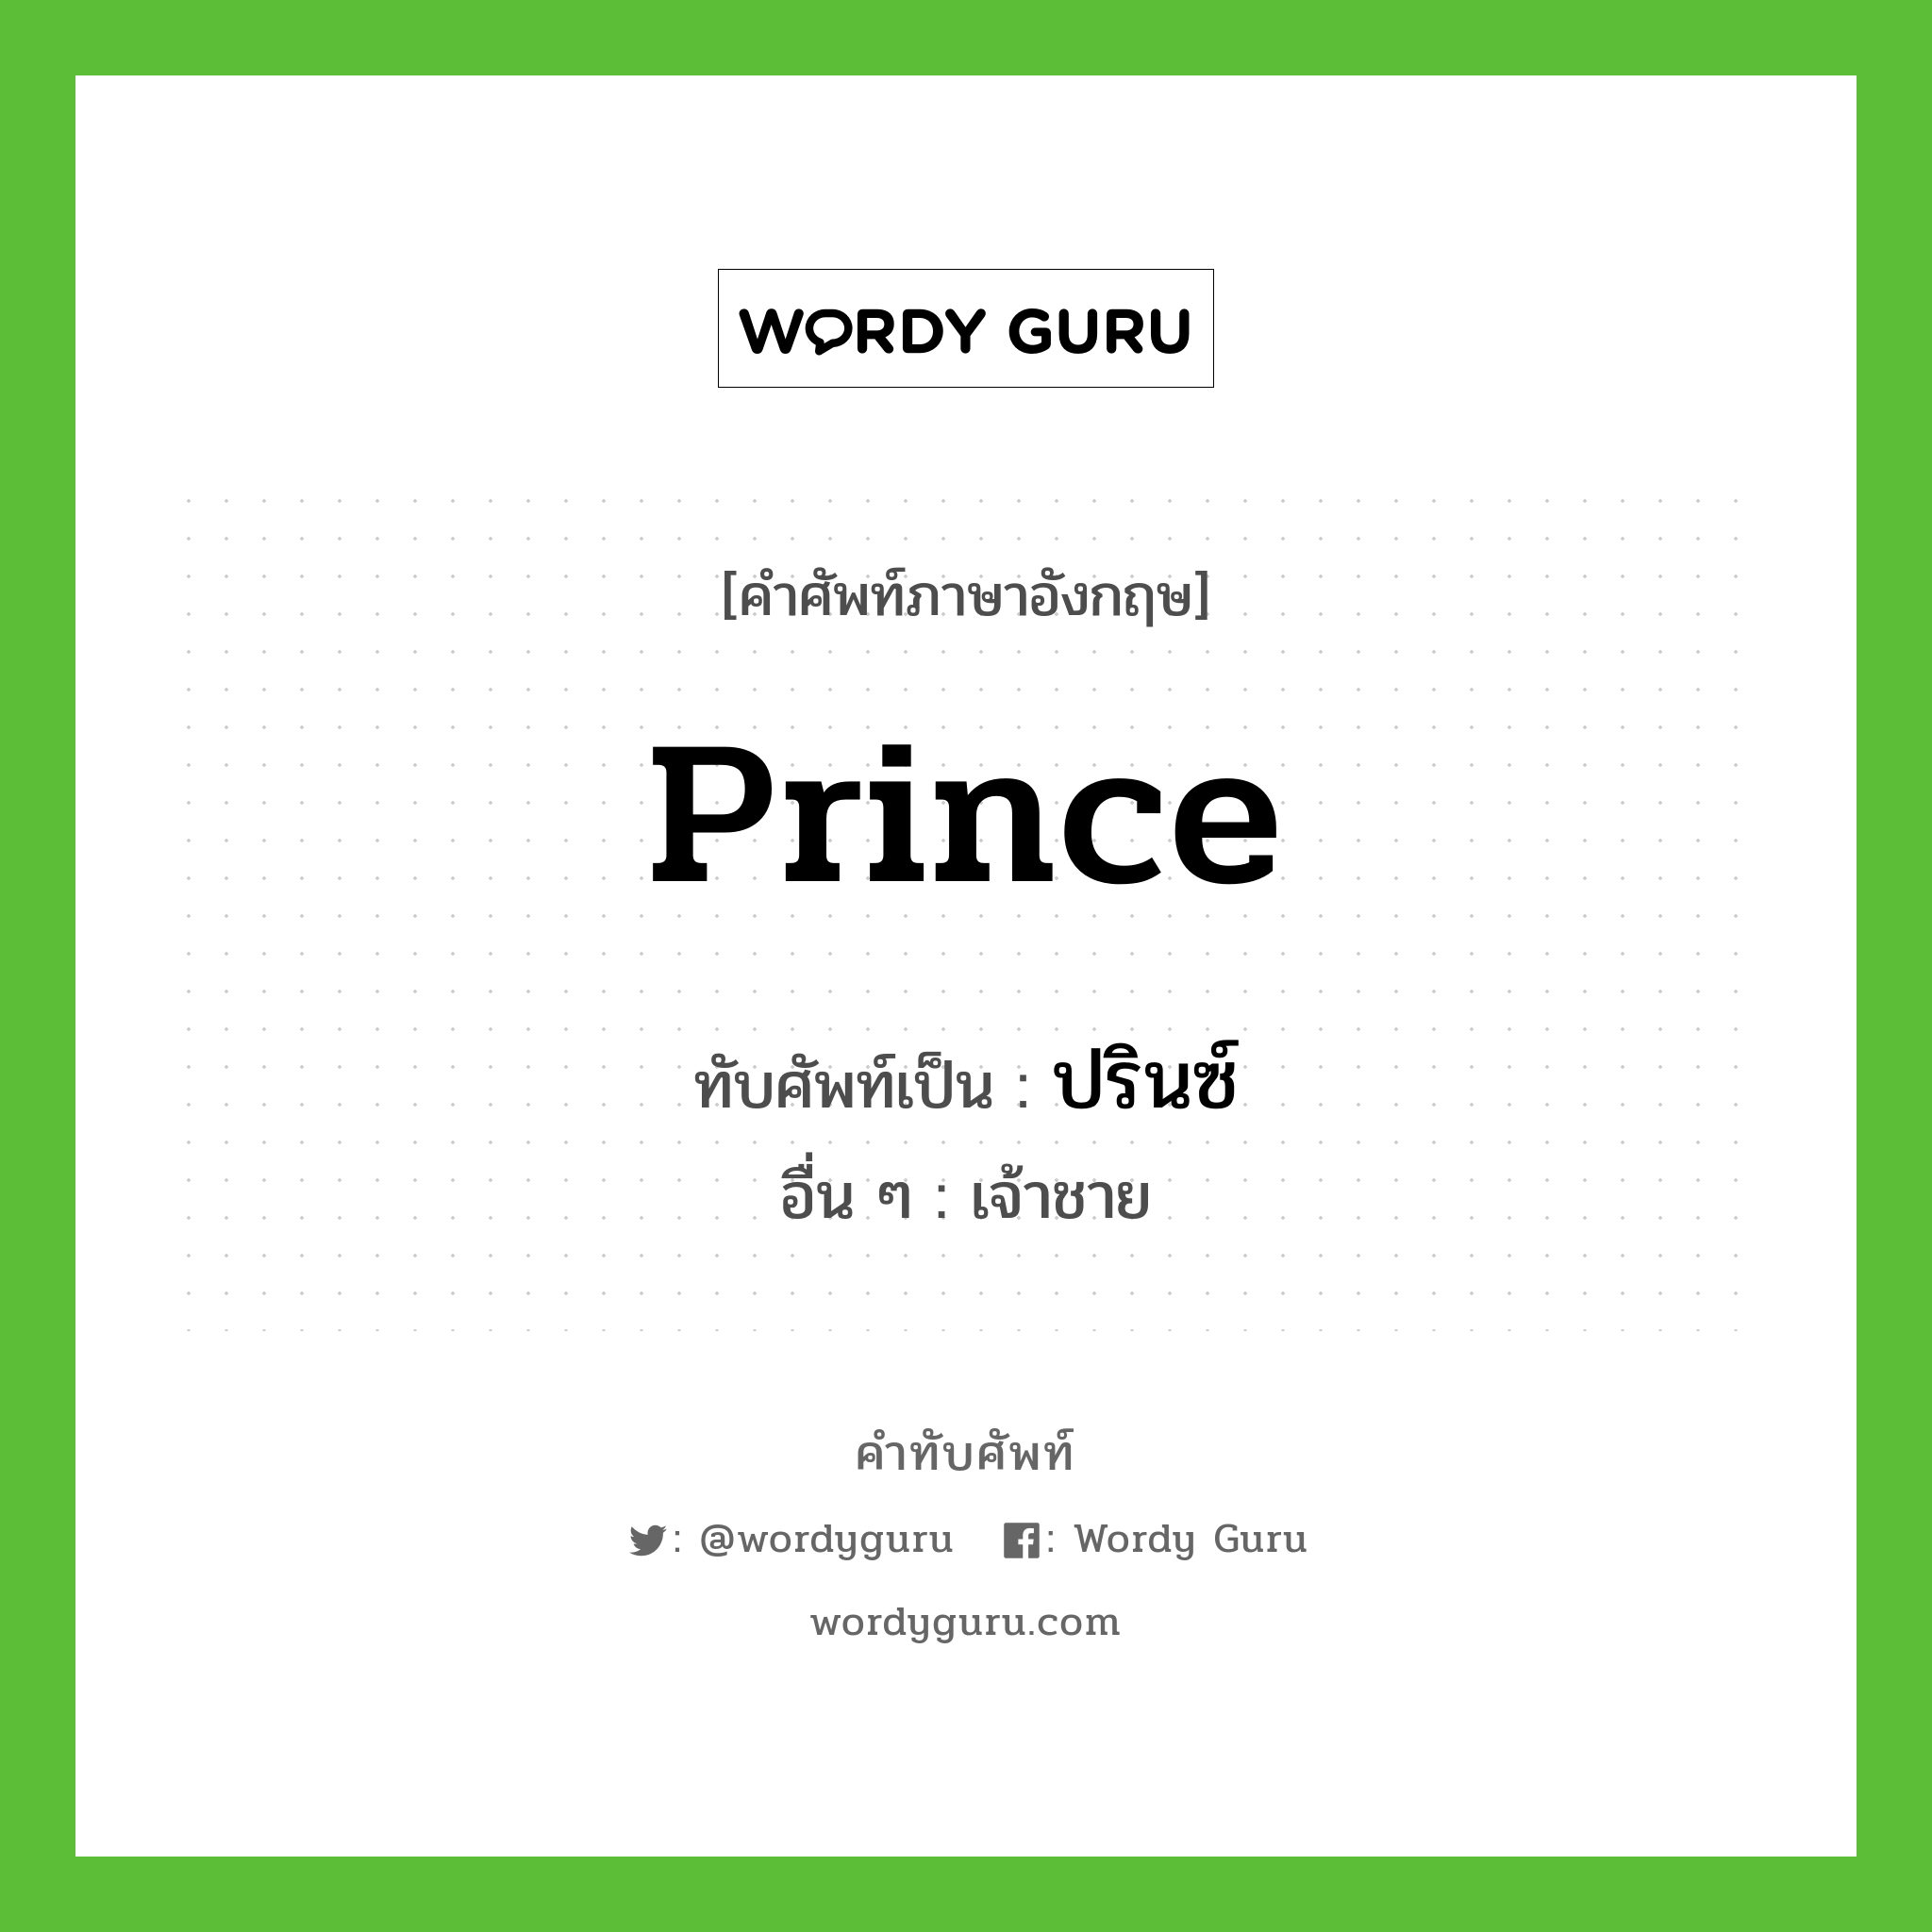 prince เขียนเป็นคำไทยว่าอะไร?, คำศัพท์ภาษาอังกฤษ prince ทับศัพท์เป็น ปรินซ์ อื่น ๆ เจ้าชาย